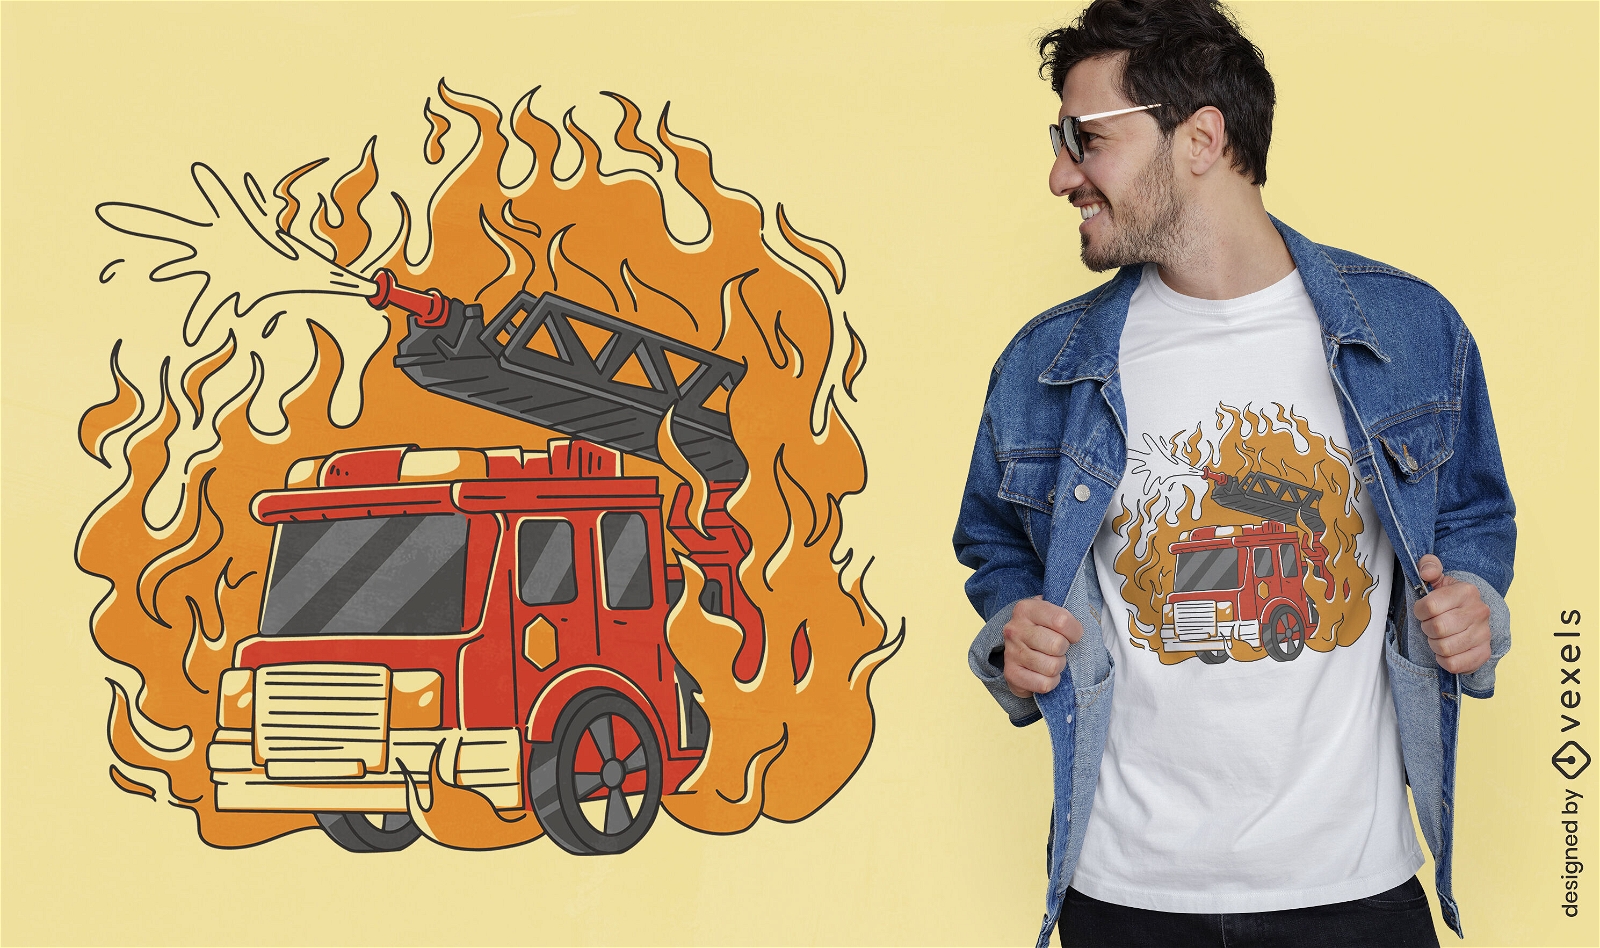 Firetruck transport on fire t-shirt design